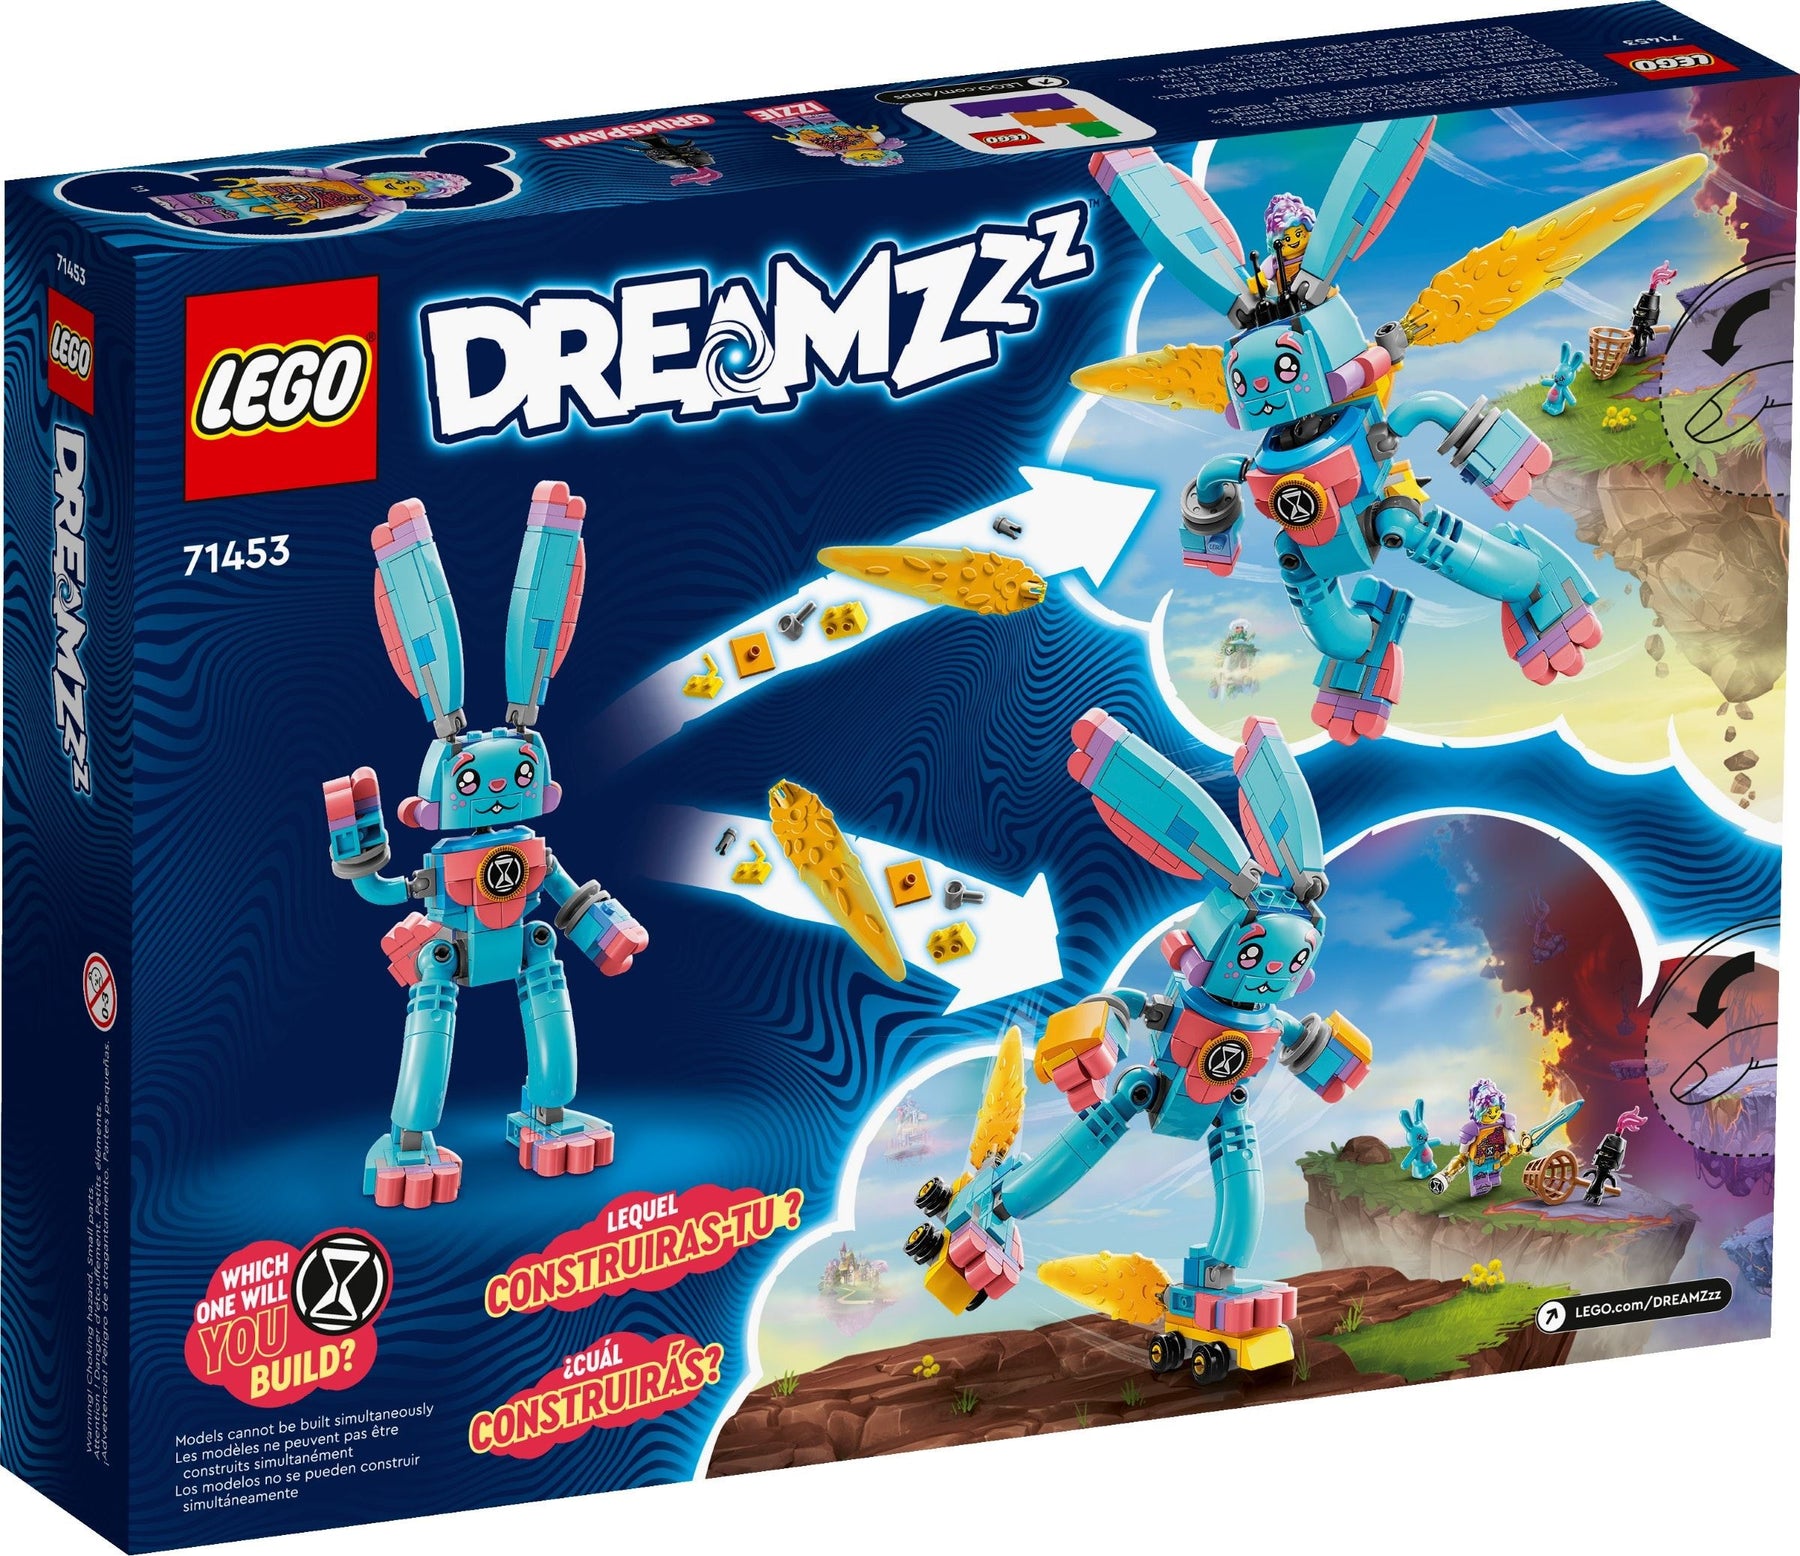 LEGO Dreamzzz 71453 Izzie ja Bunchu Pupu